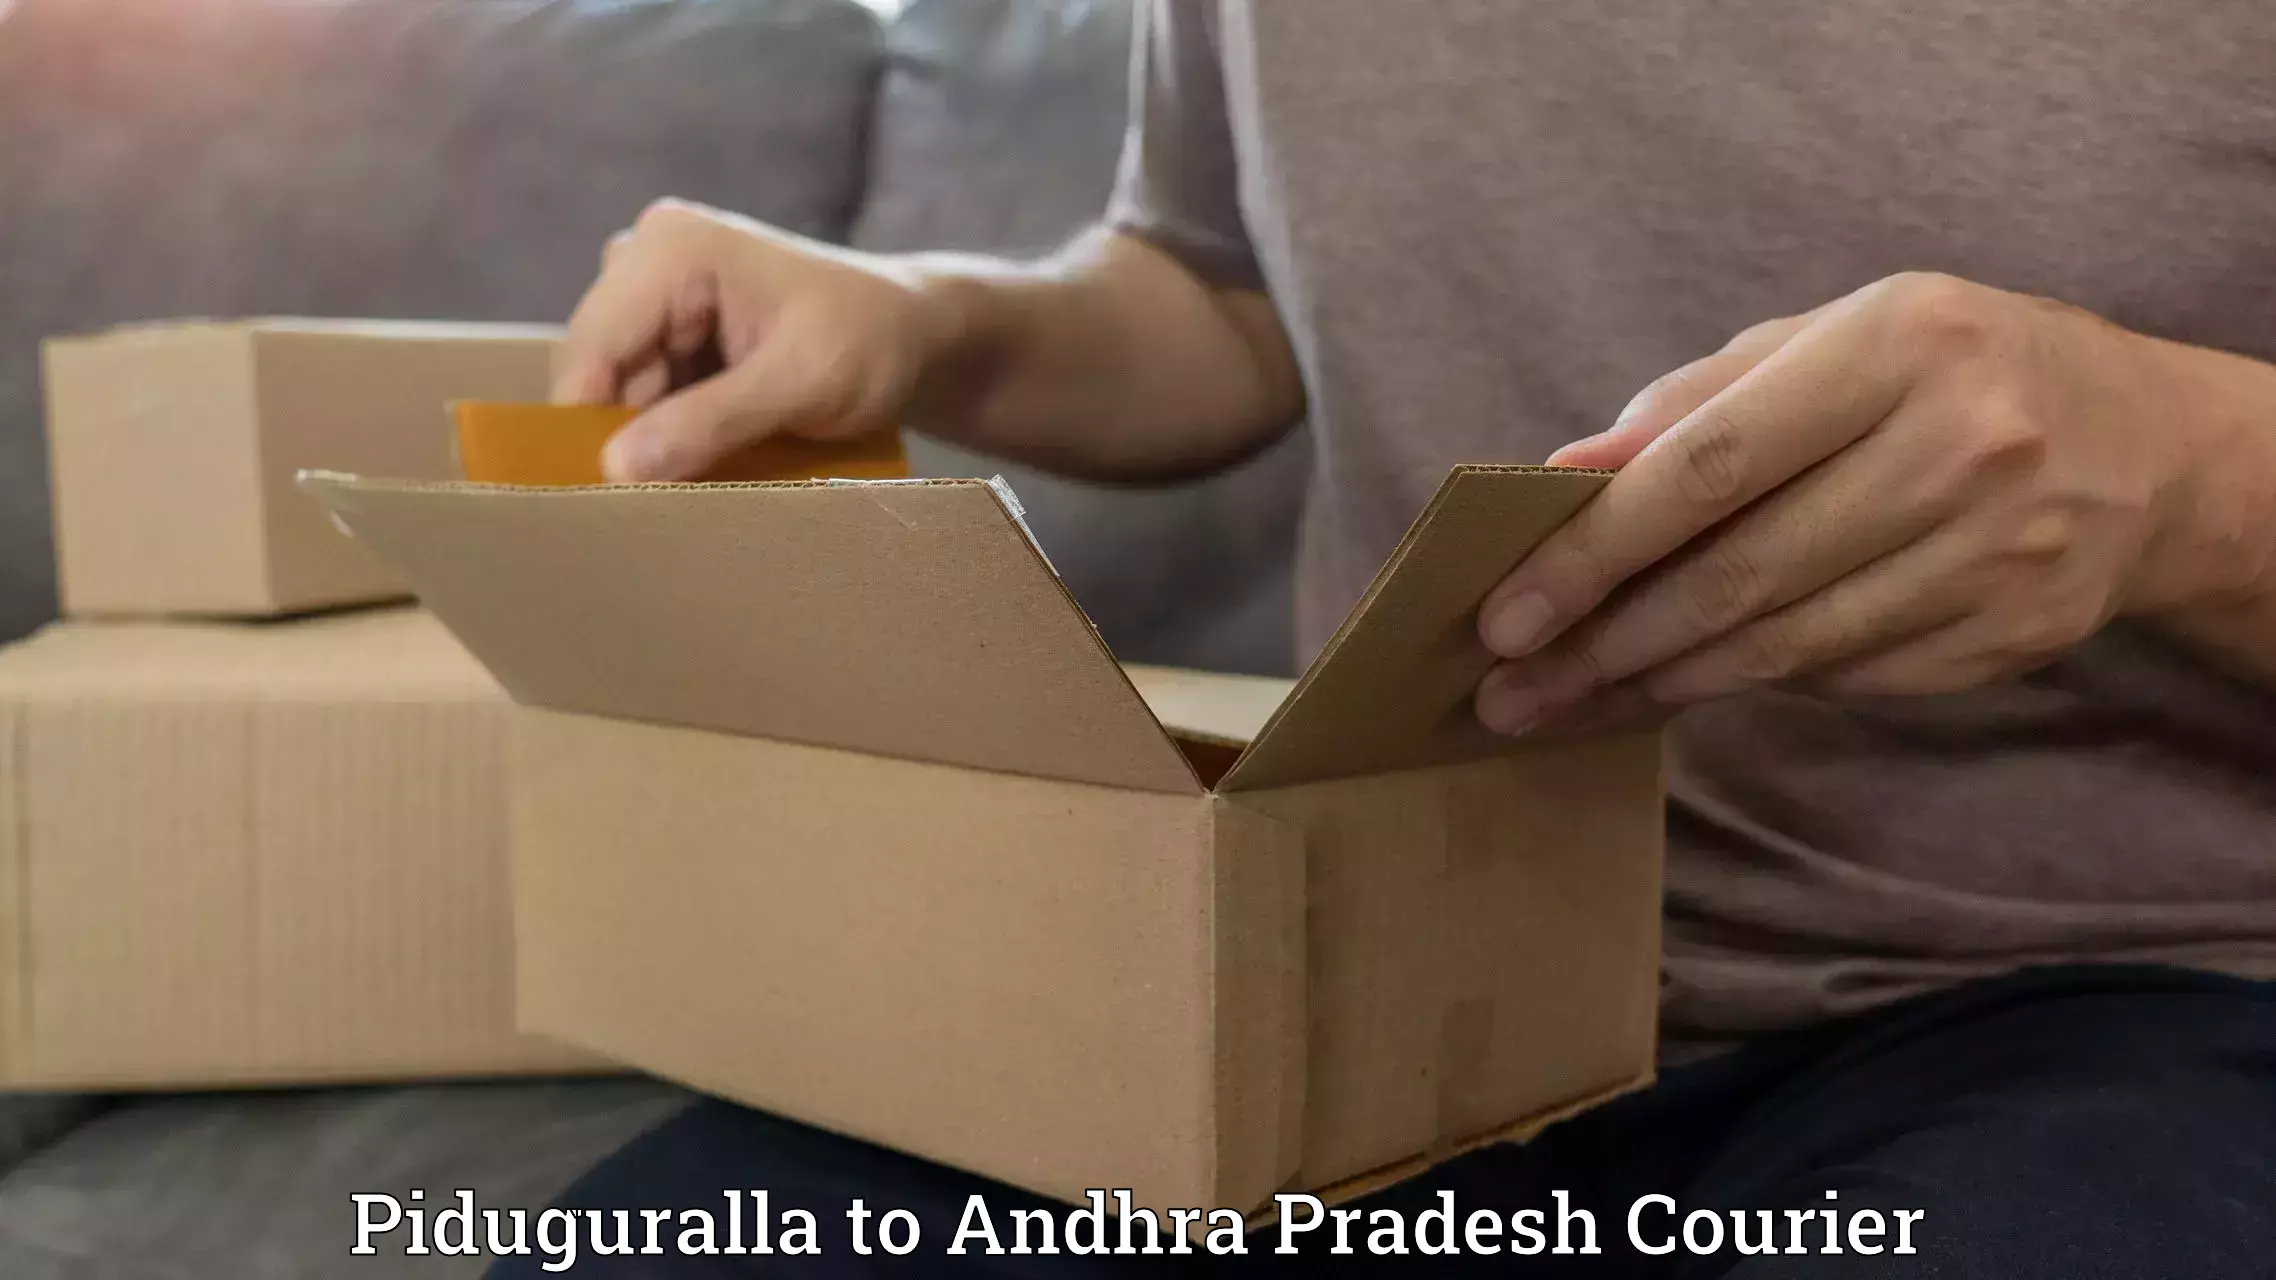 Automated parcel services Piduguralla to Garividi